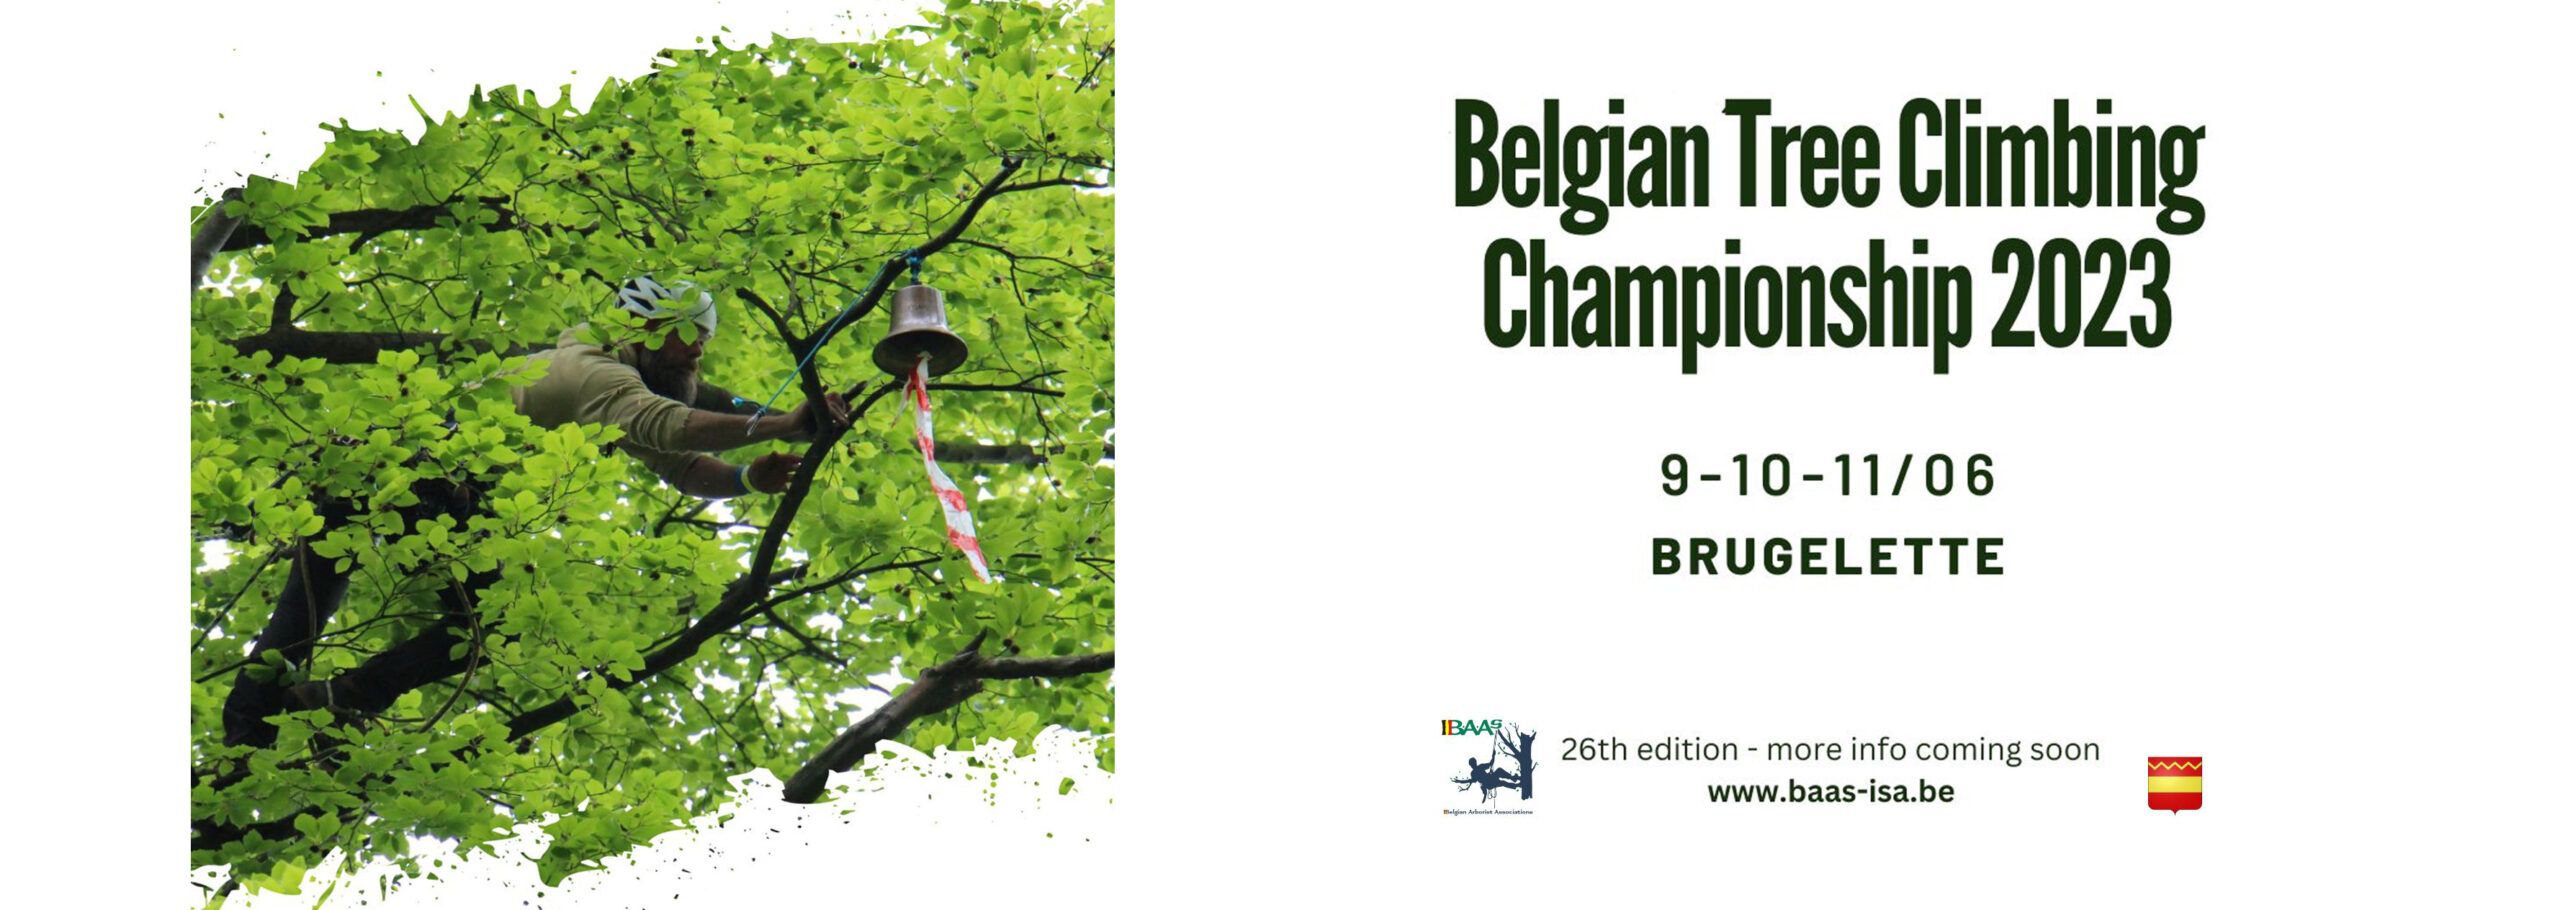 Banner aankondiging BTCC 2022 - Eeklo - Heldenpark - 10, 11 en 12 juni